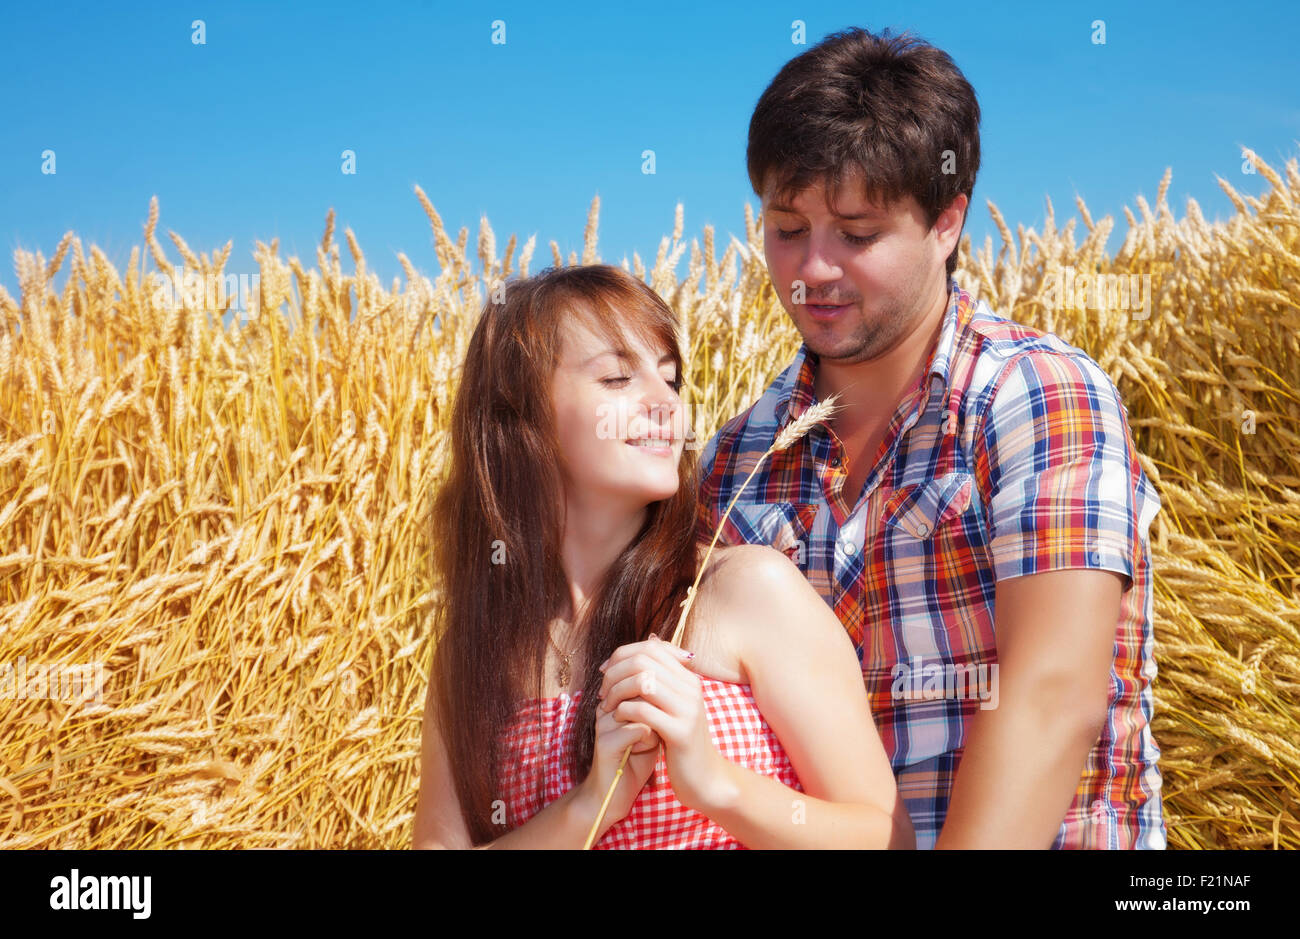 Porträt eines jungen Paares auf dem Hintergrund von einem Weizenfeld an einem sonnigen Tag Stockfoto